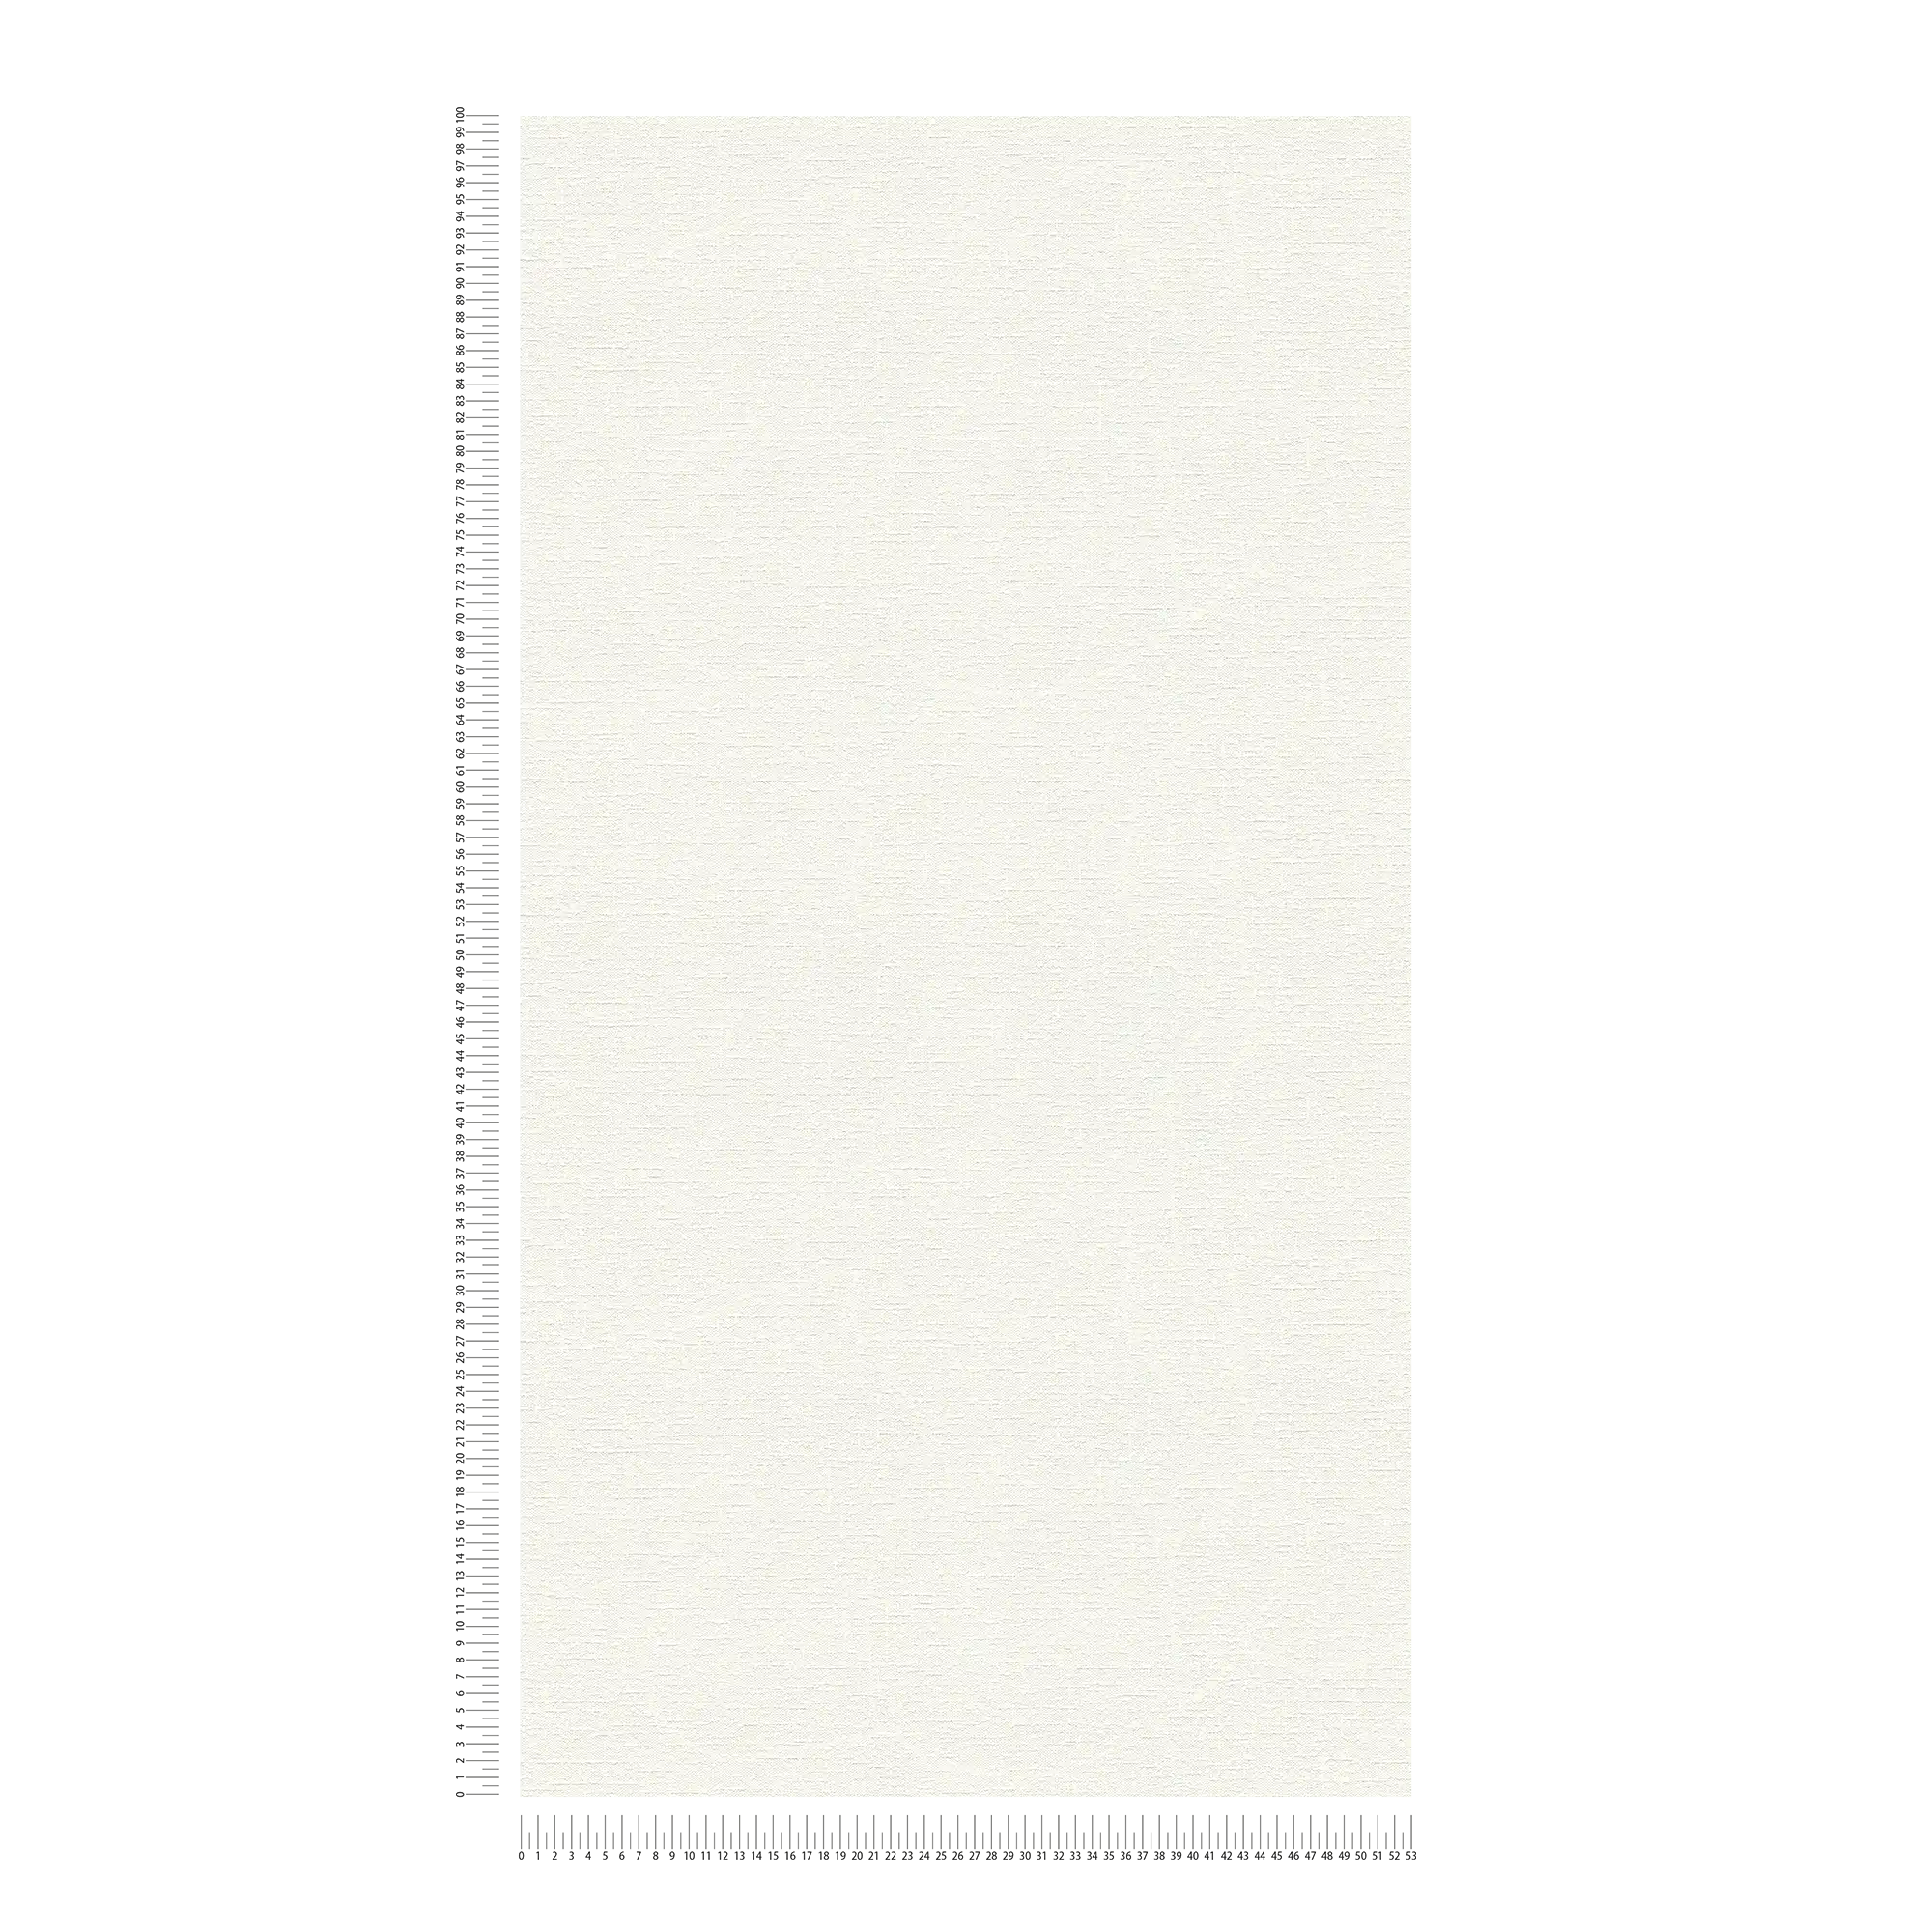             White non-woven wallpaper plain with textile texture
        